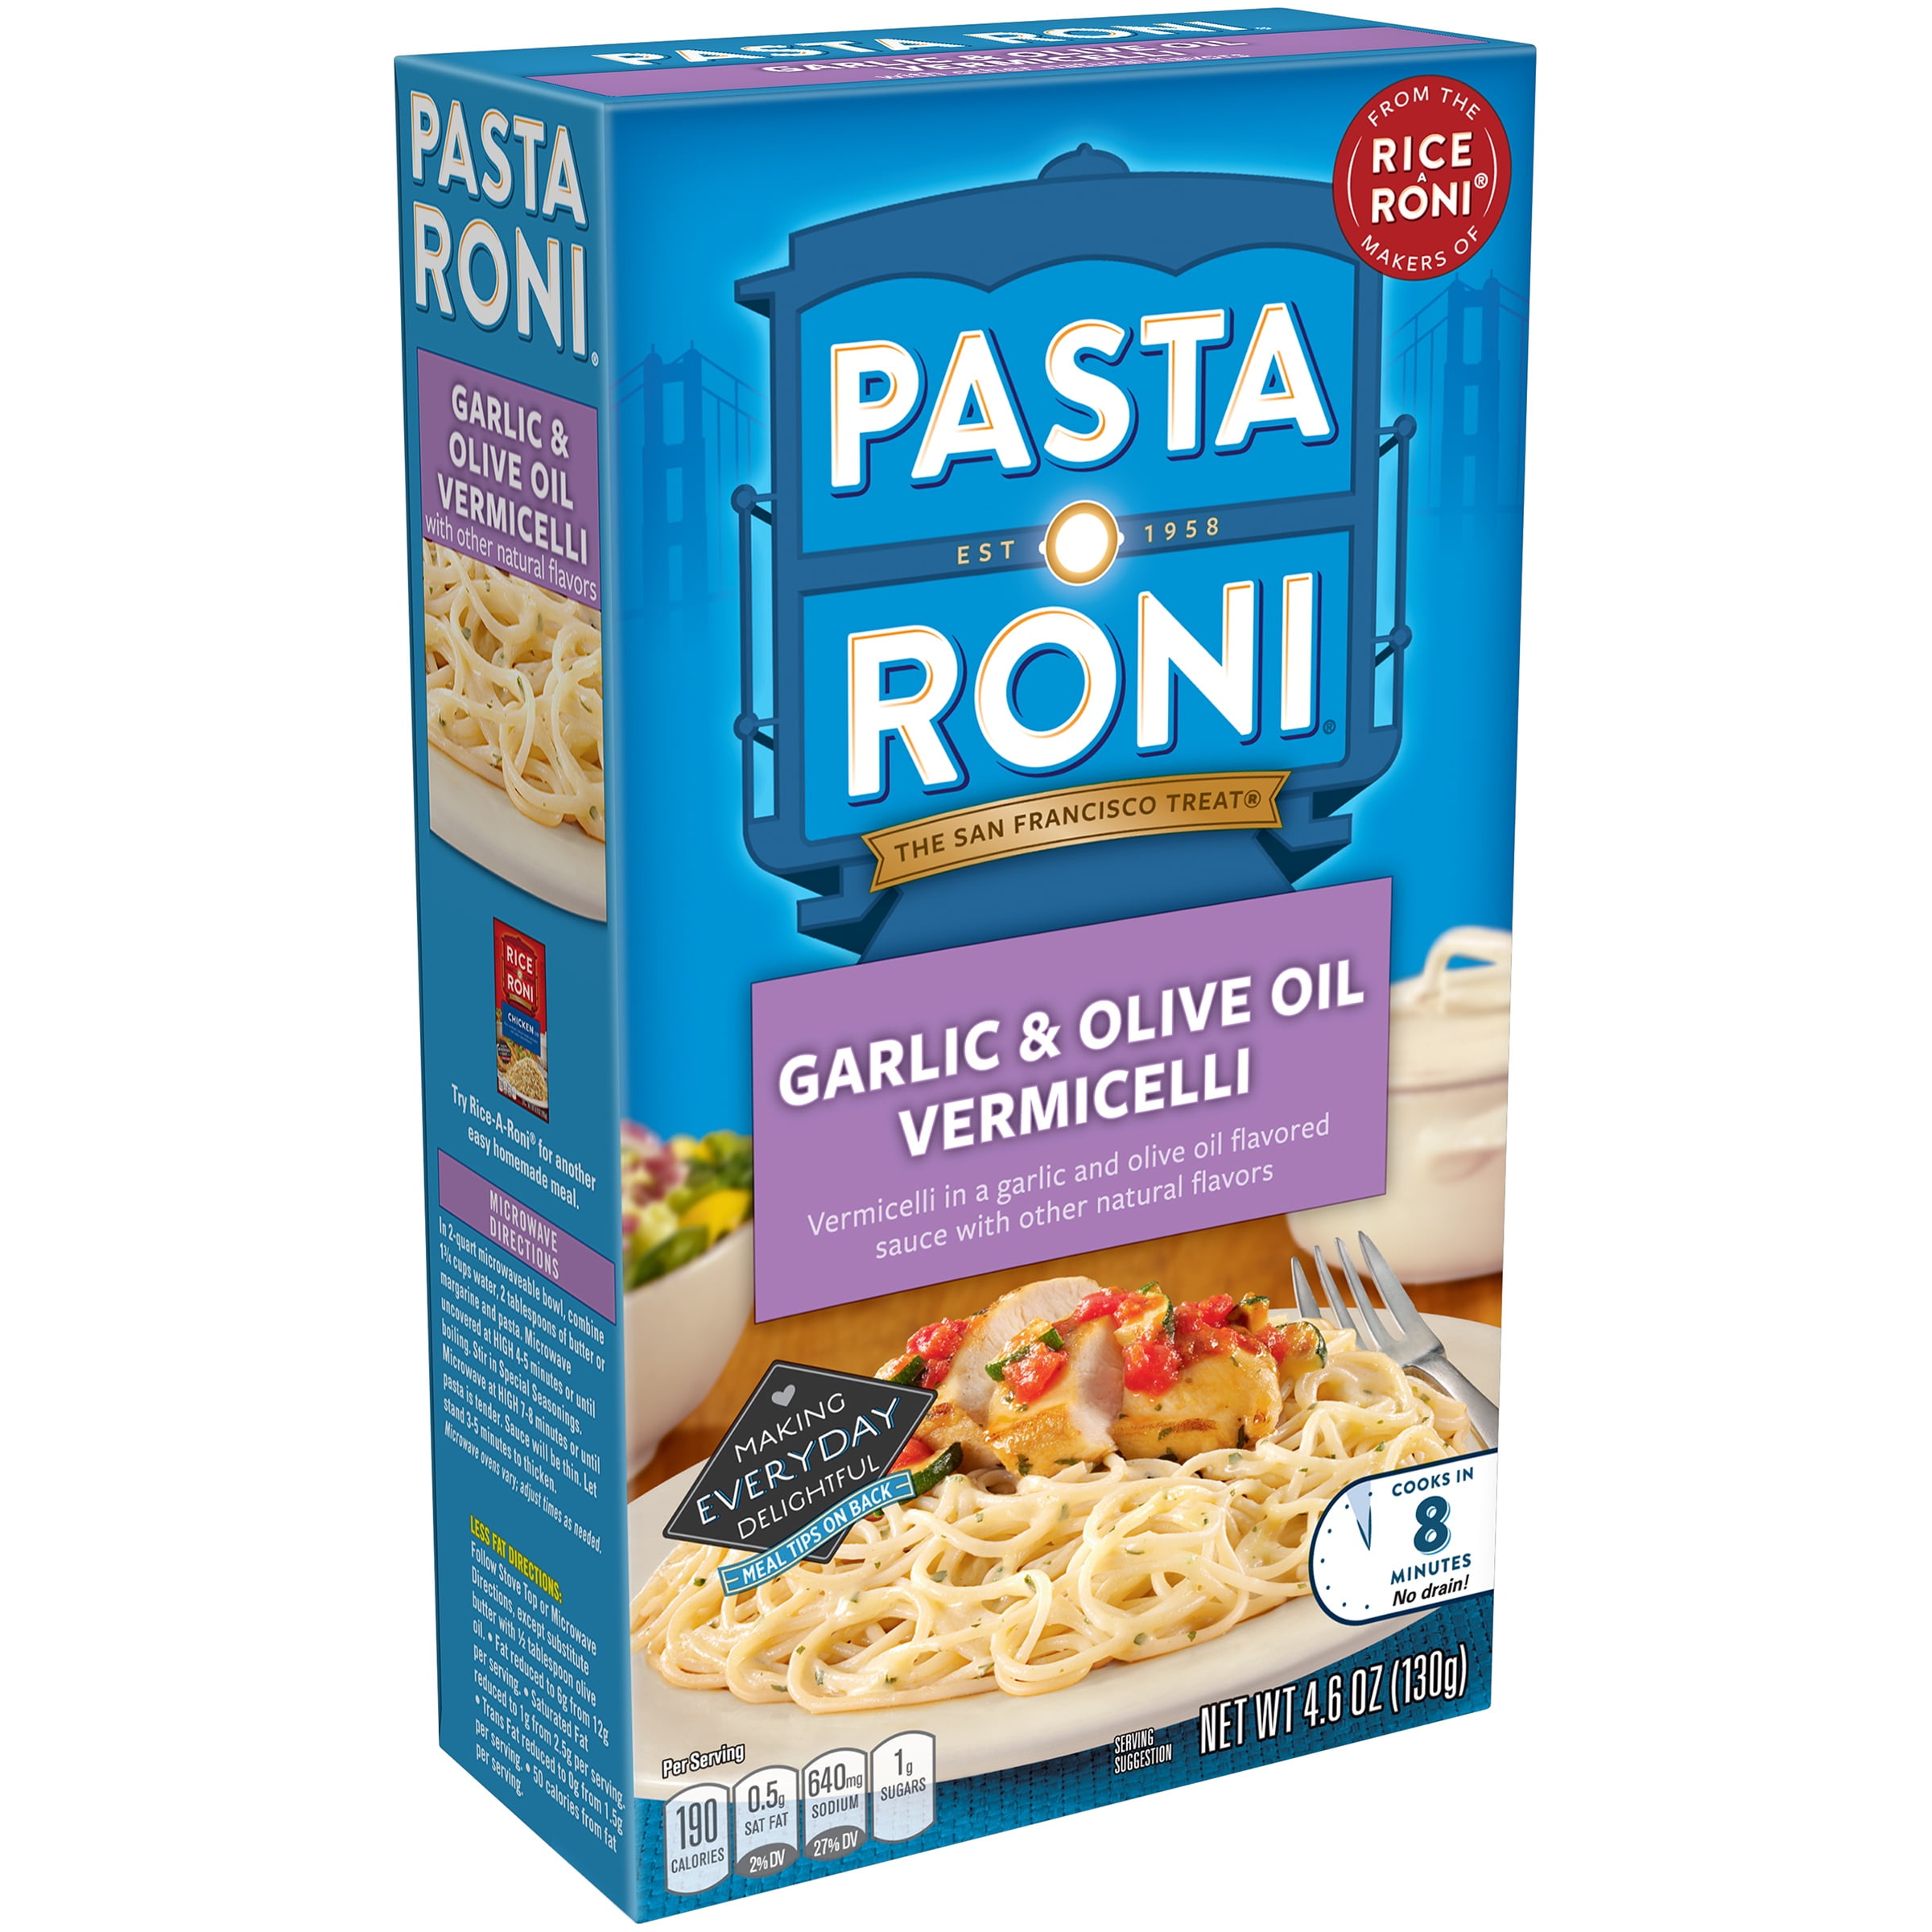 Pasta Roni Garlic & Olive Oil Vermicelli, 4.6 oz. Box - Walmart.com